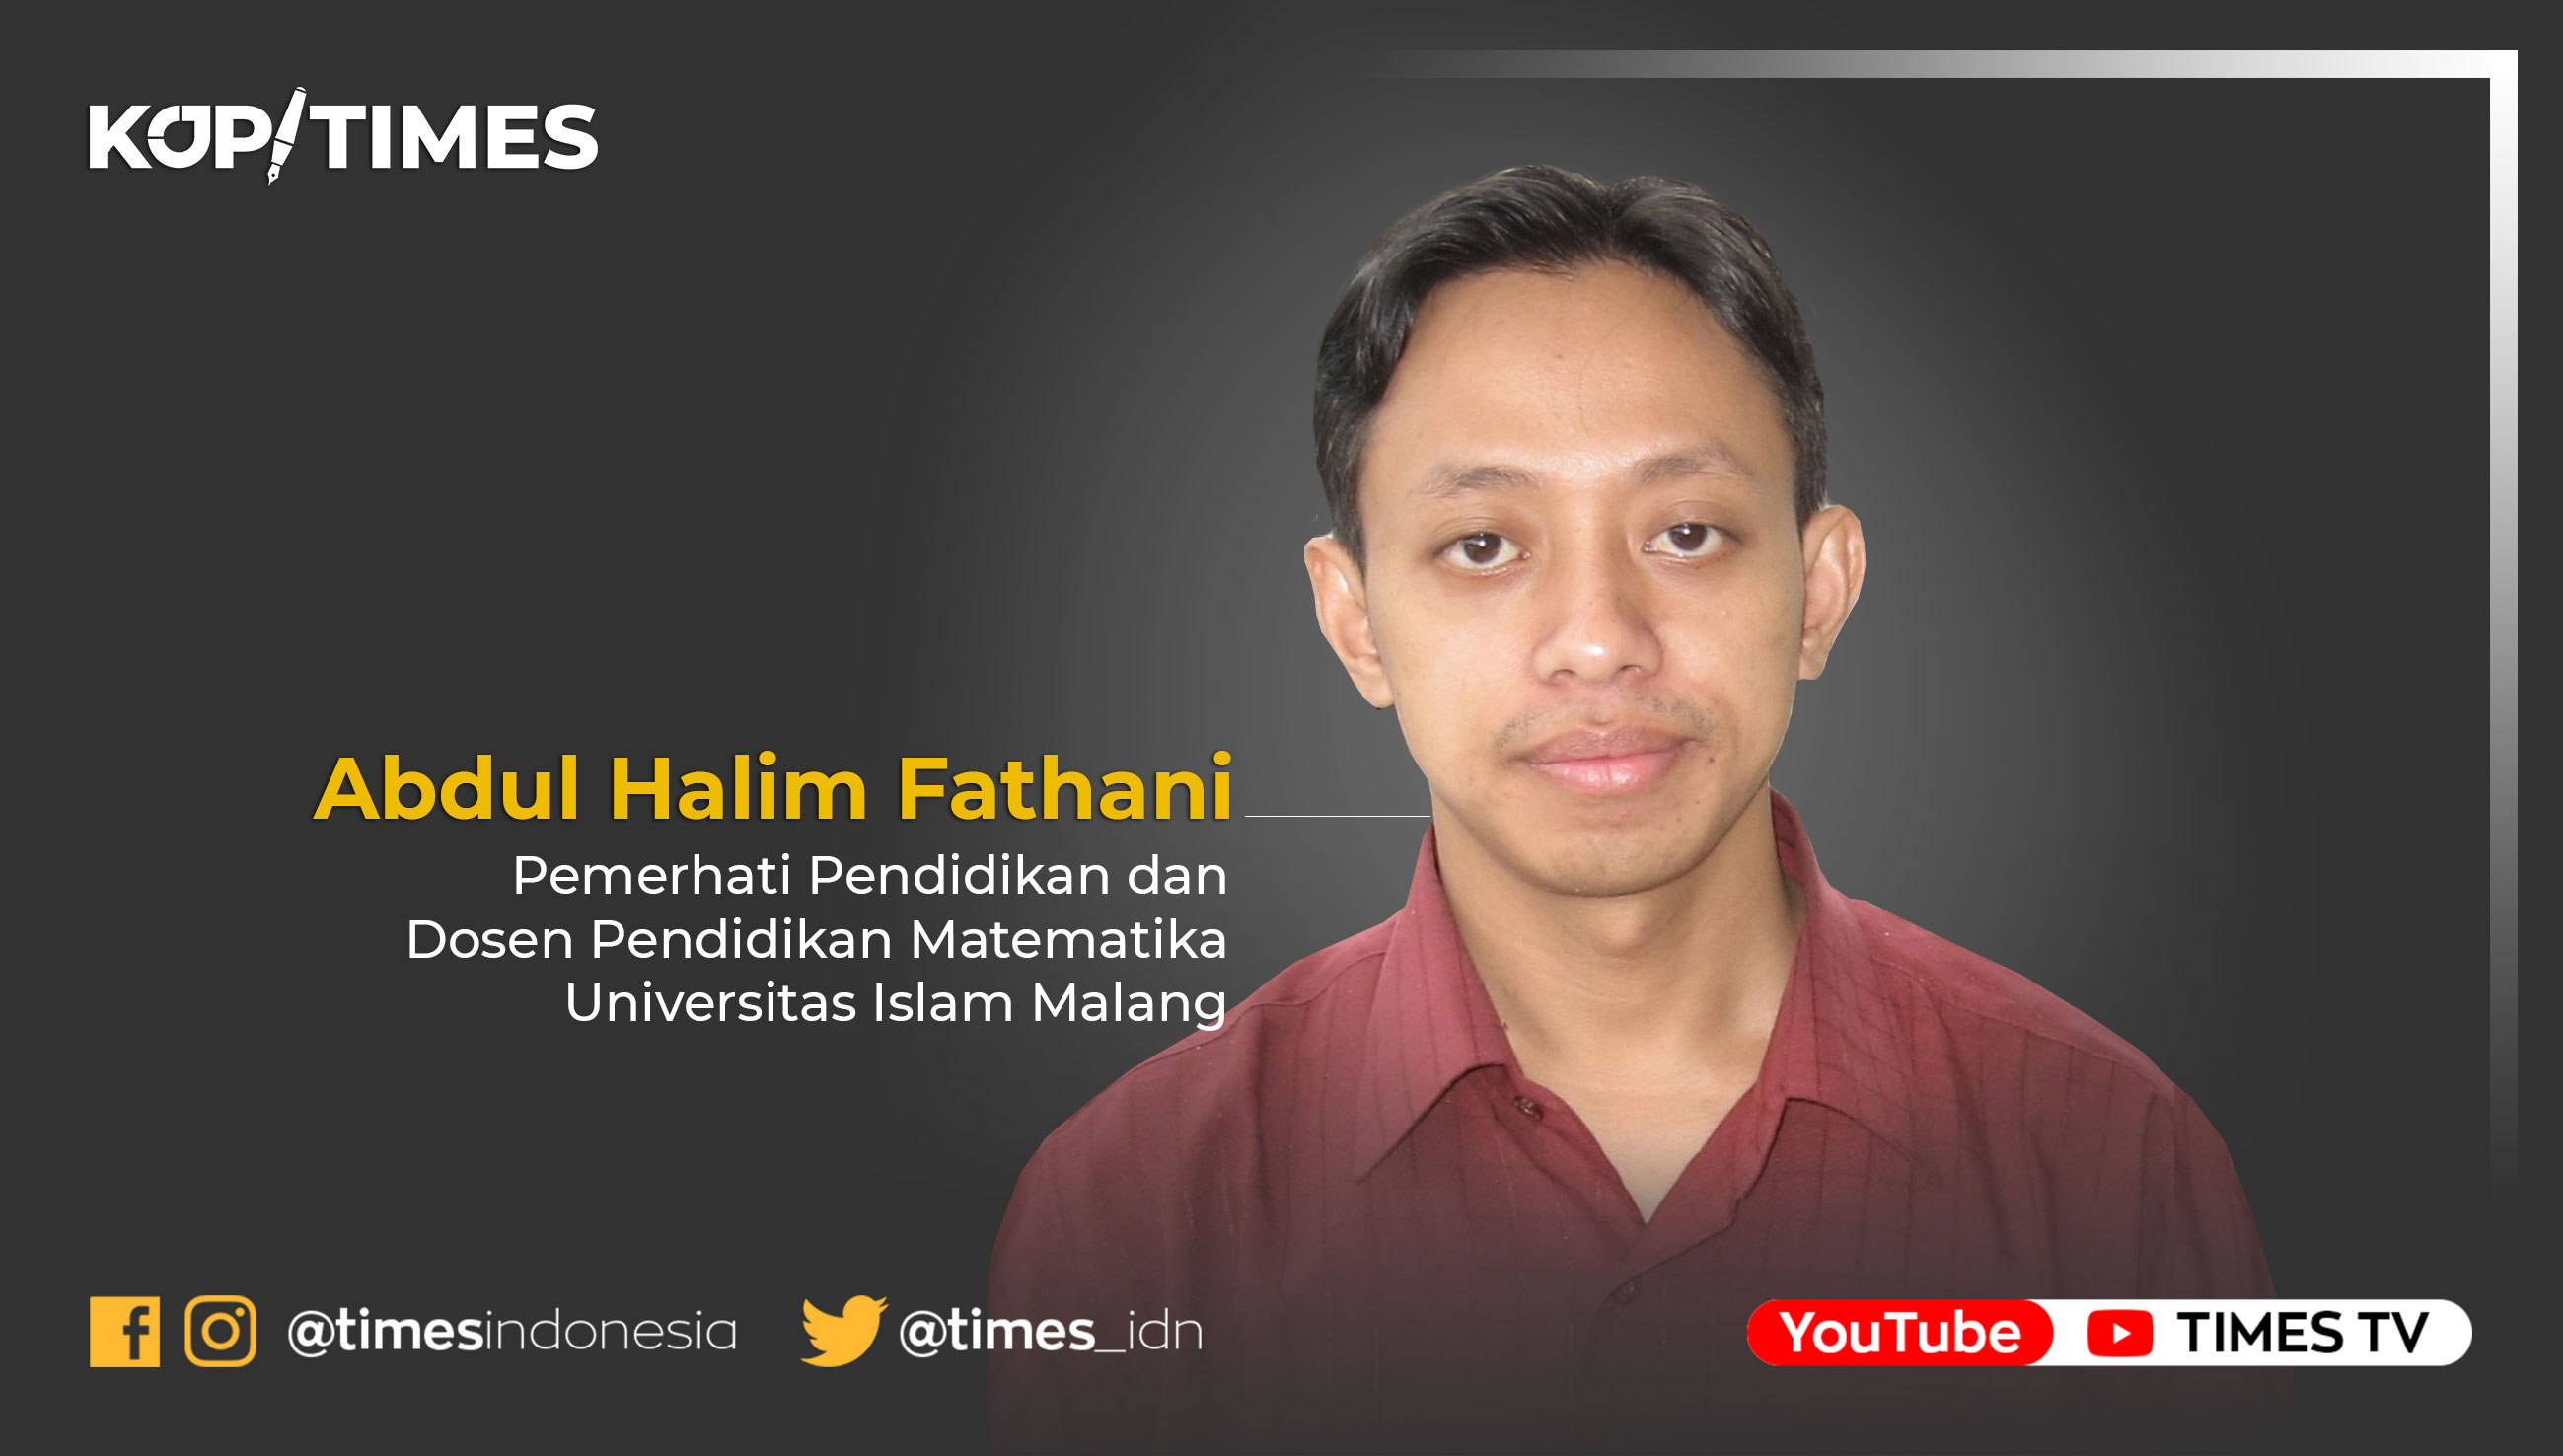 Abdul Halim Fathani, Pemerhati Pendidikan dan Dosen Pendidikan Matematika Universitas Islam Malang.